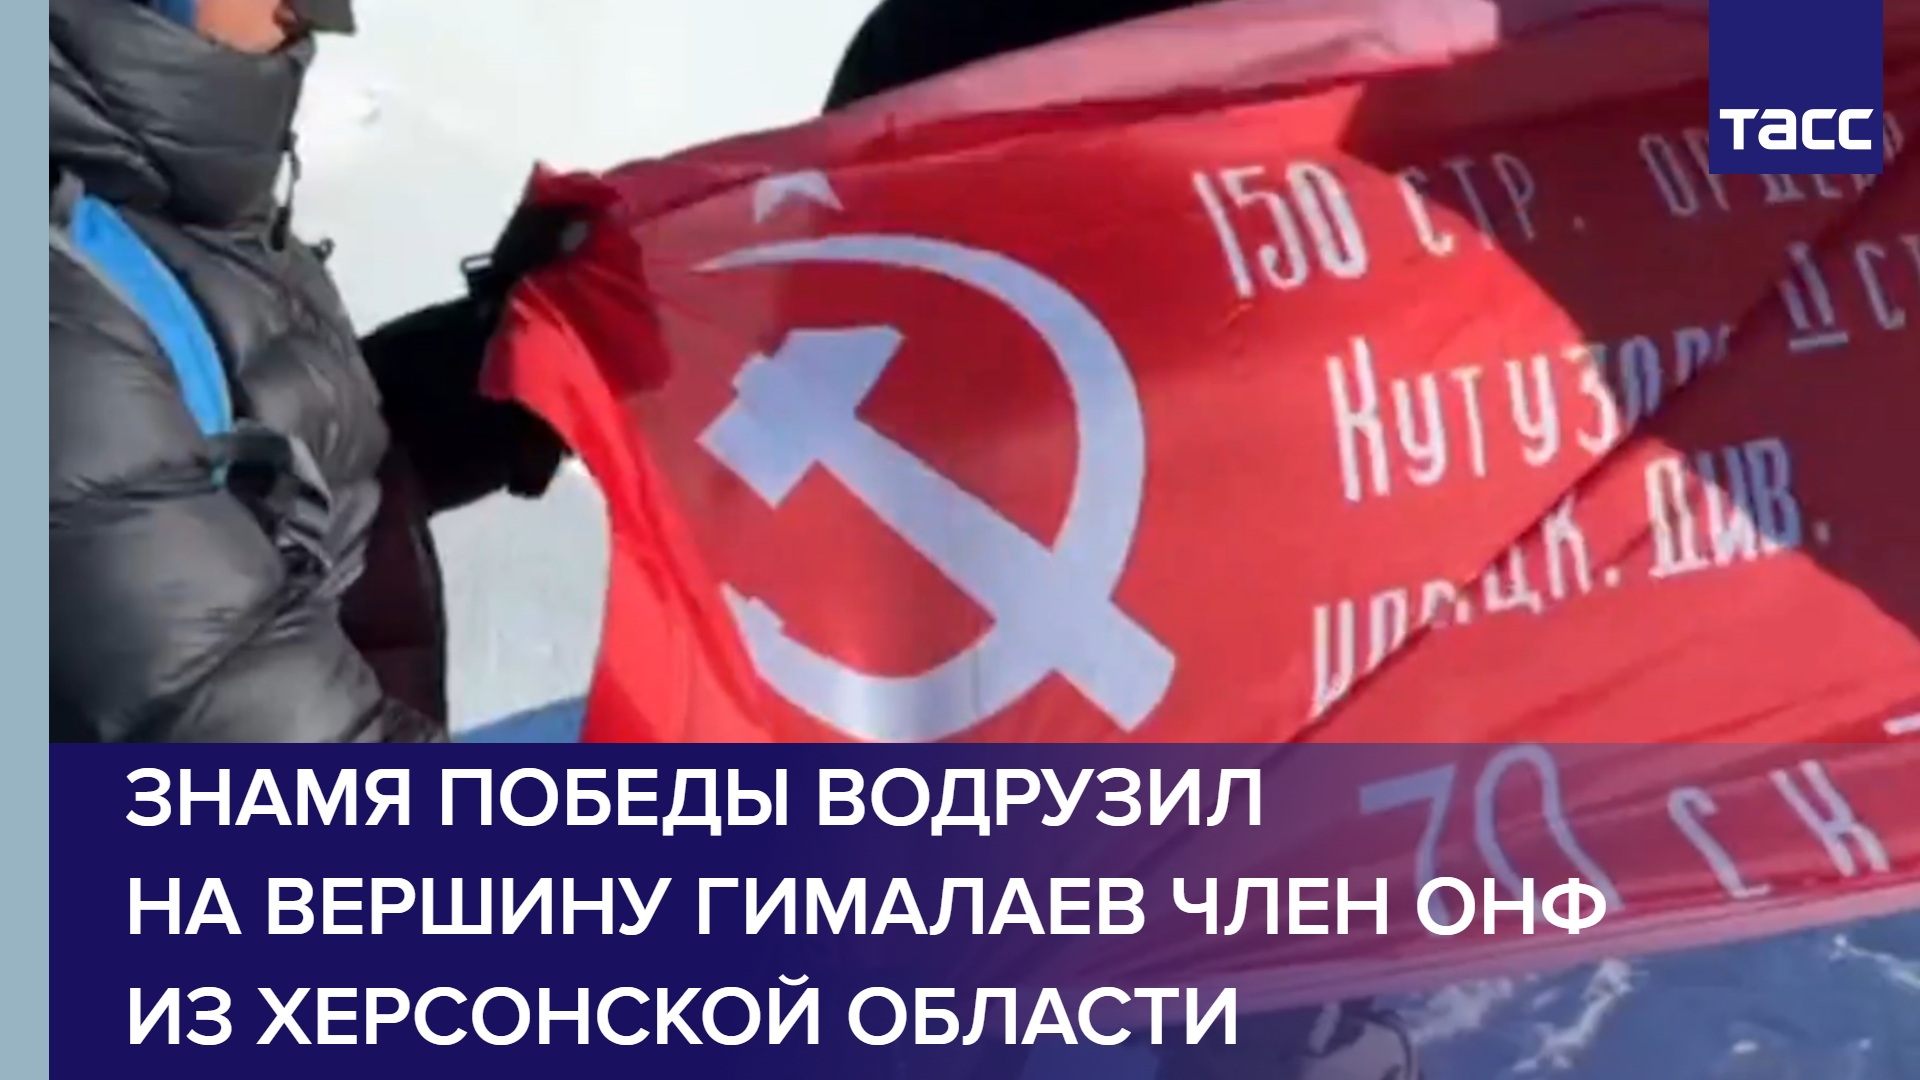 Знамя Победы водрузил на вершину Гималаев член ОНФ из Херсонской области